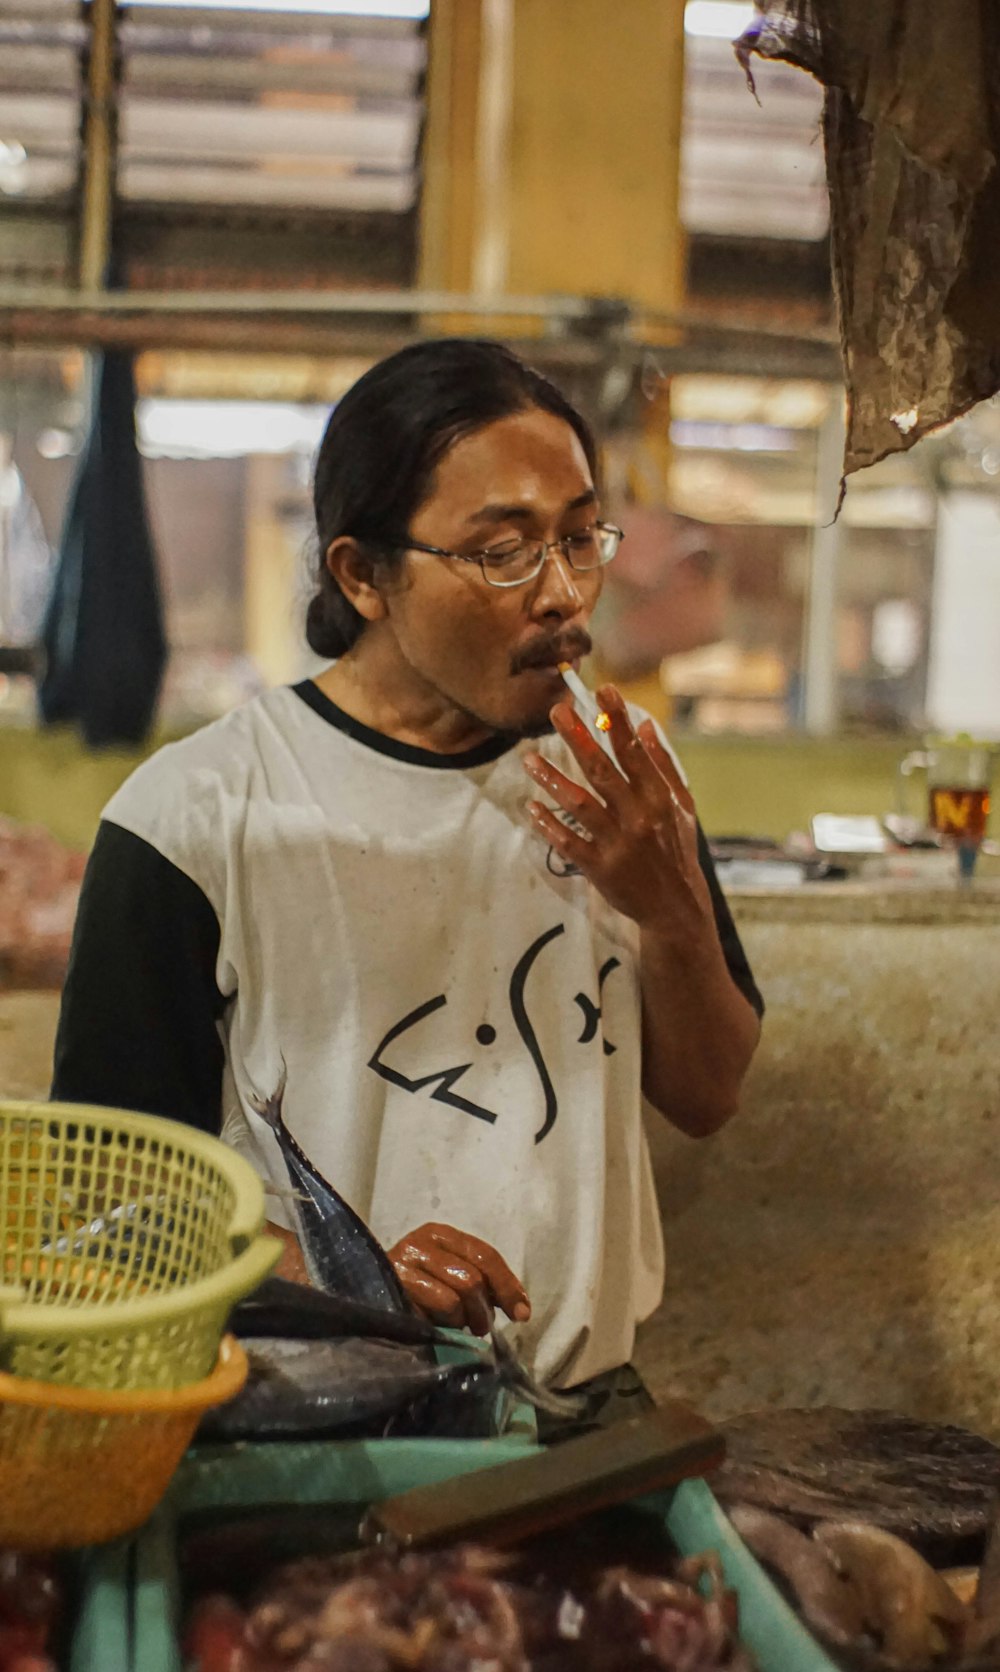 man smoking while holding fish